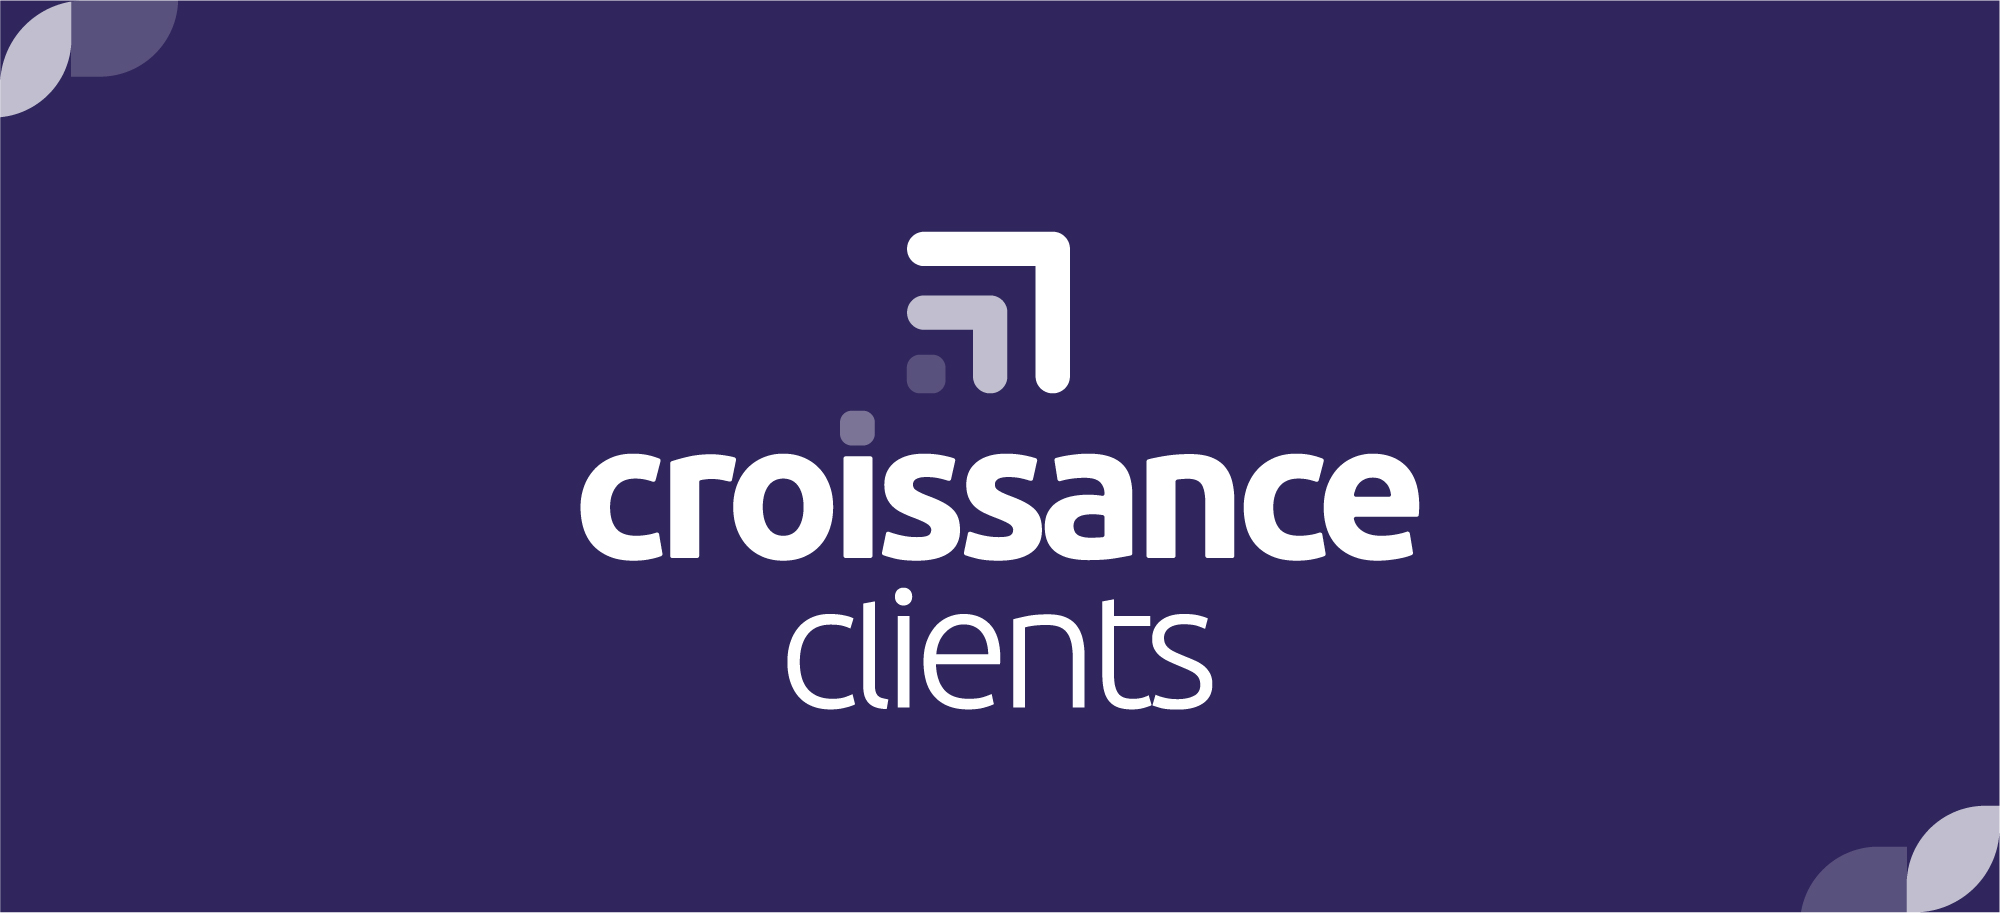 Image Croissance Clients